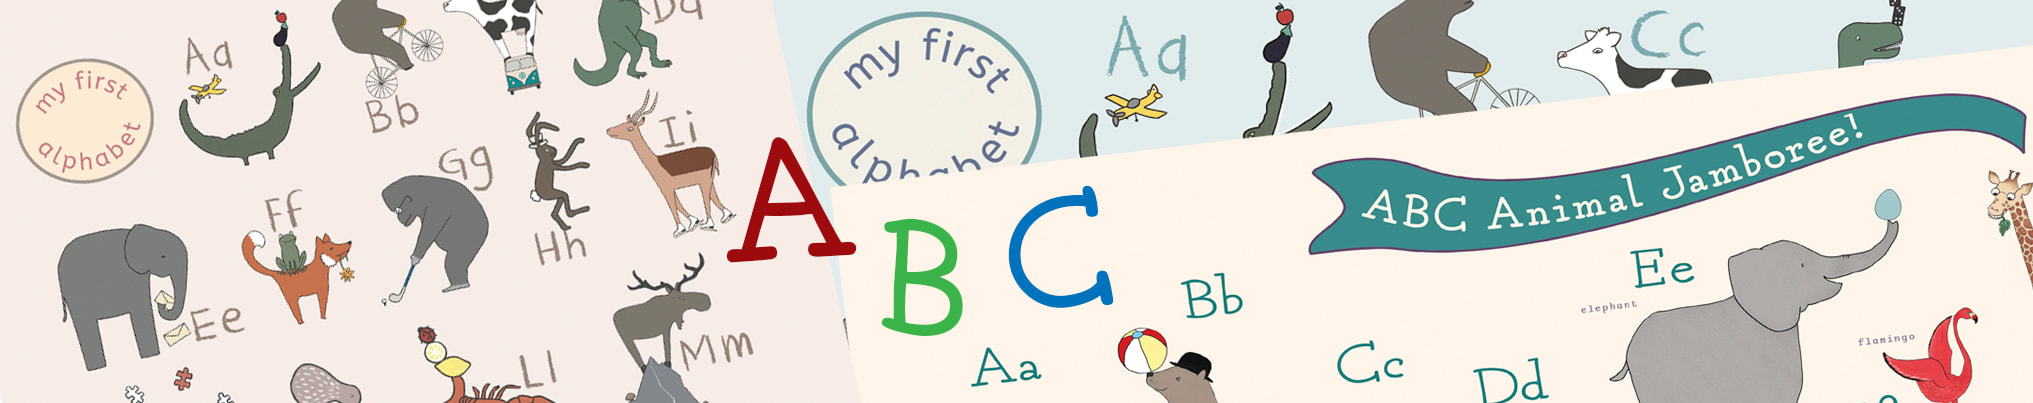 ABC Children's Alphabet Prints by Little Letter Studio